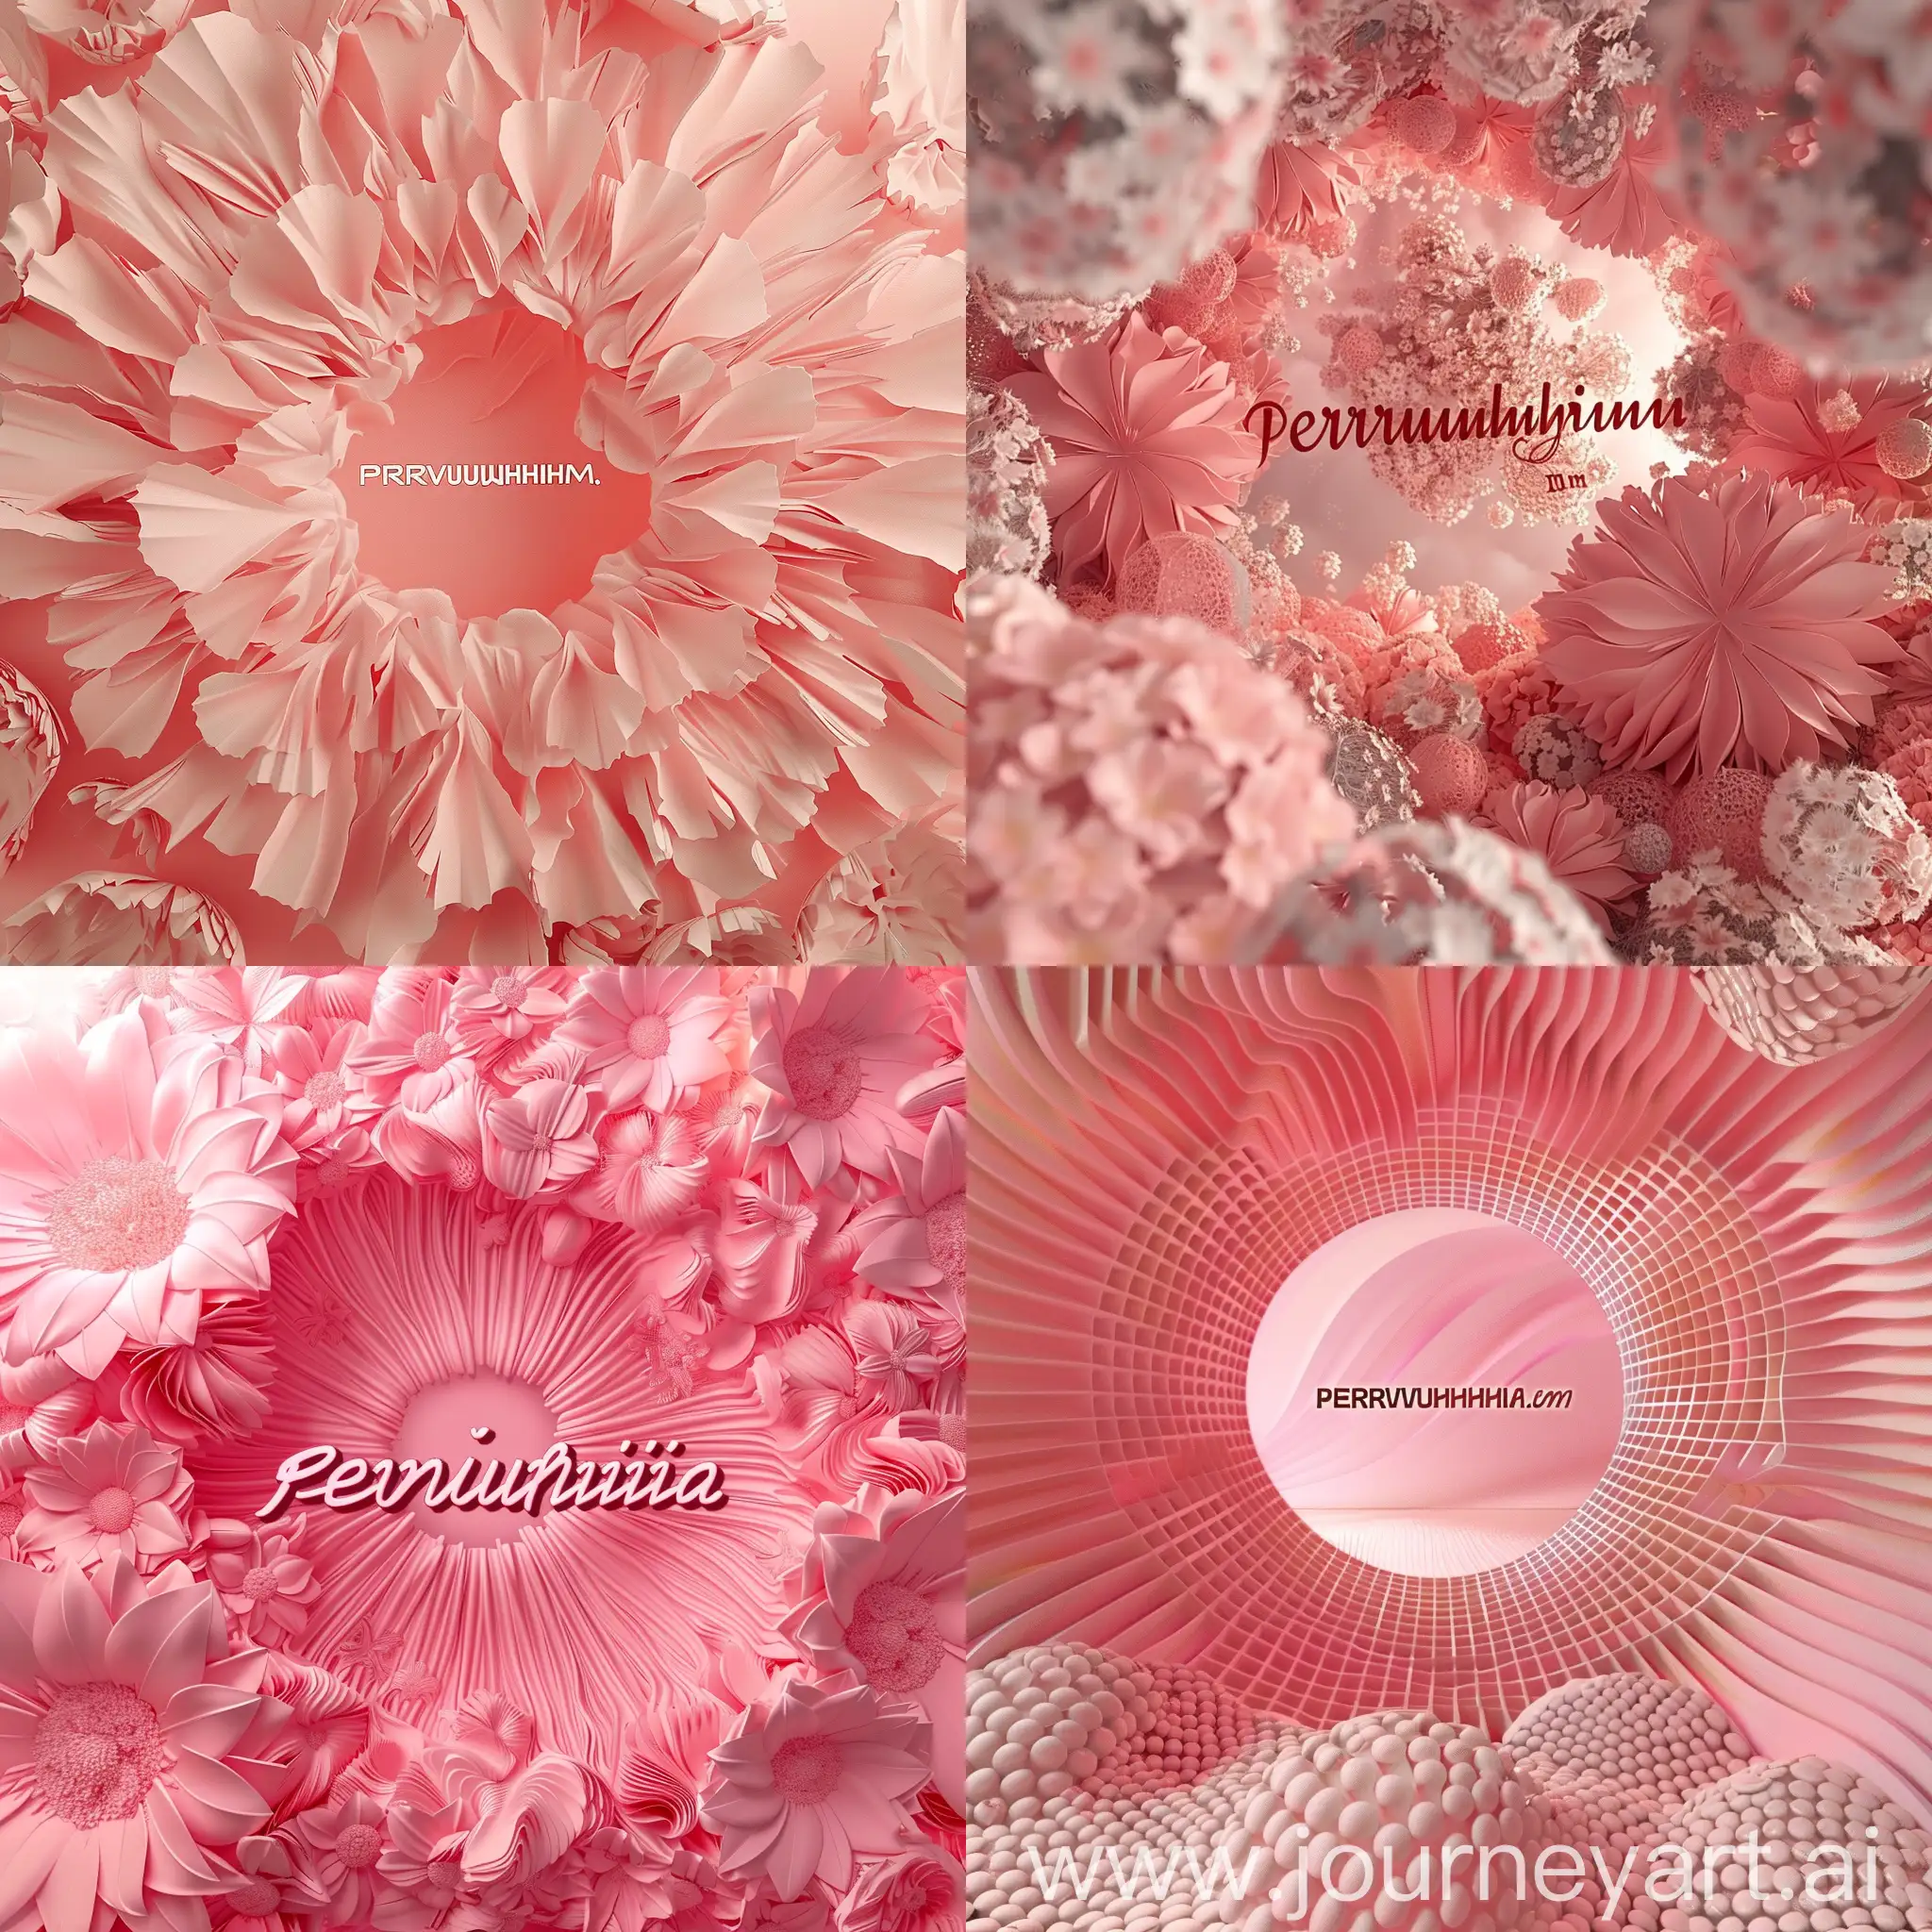 Сгенерируй красивое розовое объемное фото с надписью Pervukhina.pm в центре